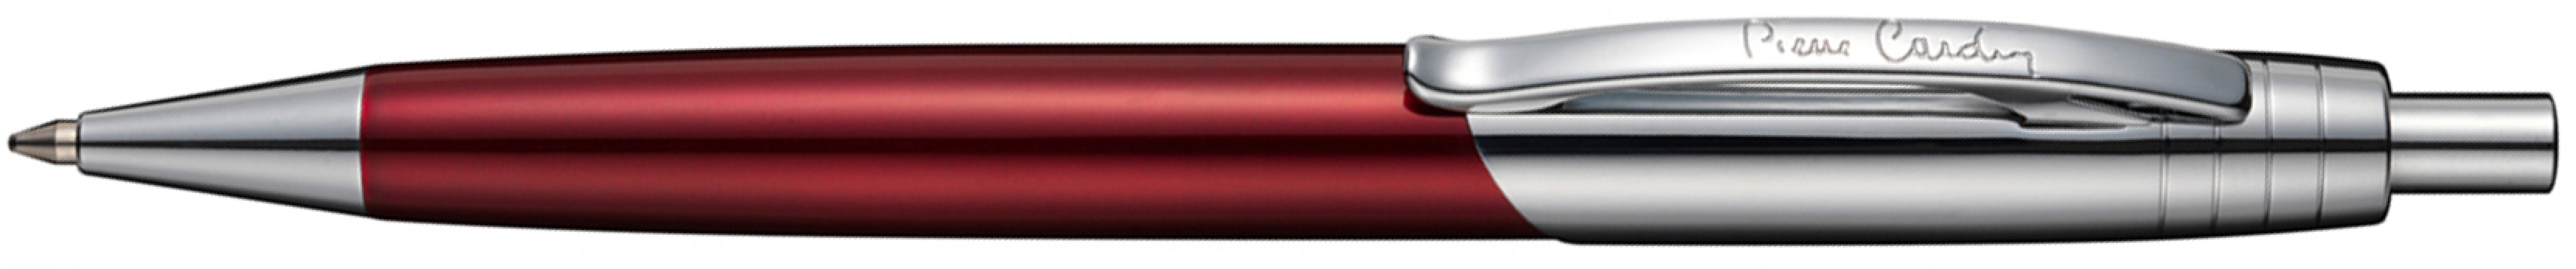 Ручка шариковая Pierre Cardin EASY, цвет - красный. Упаковка Е-2